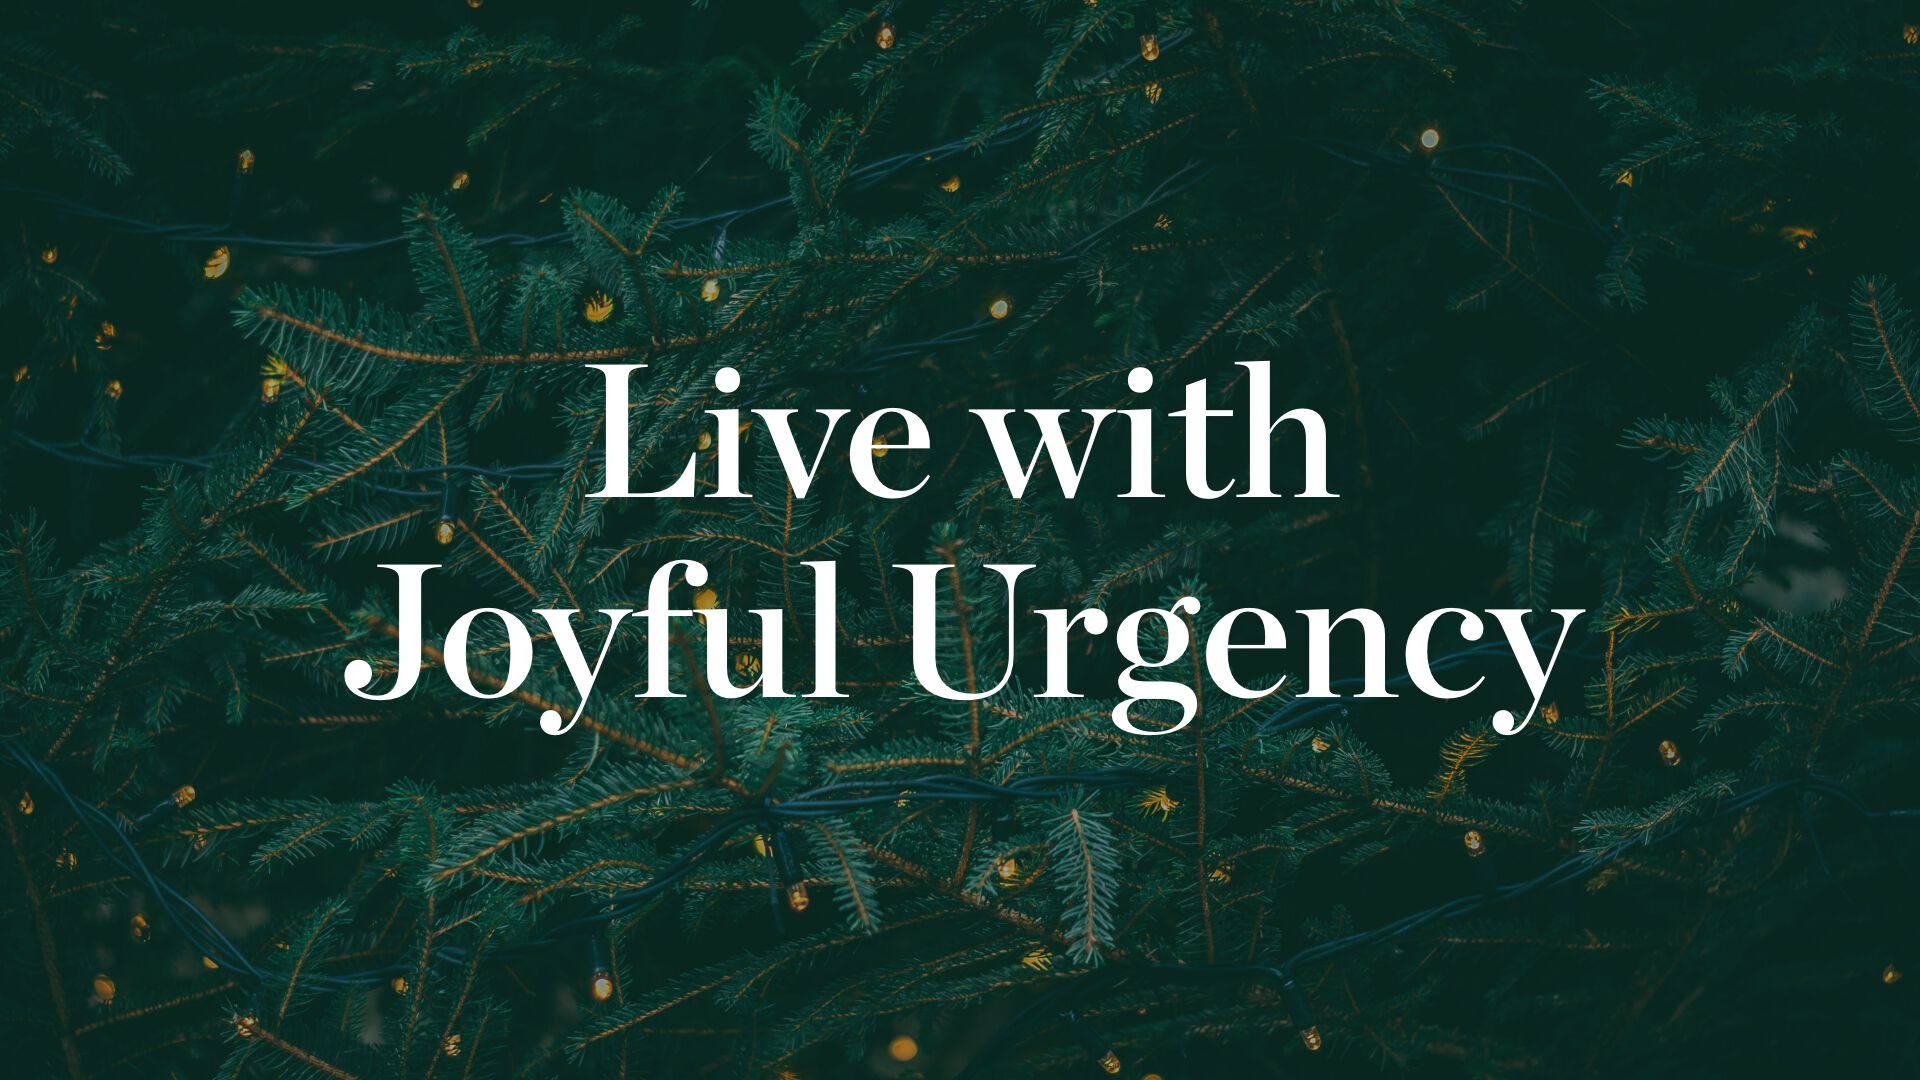 Life with joyful urgency